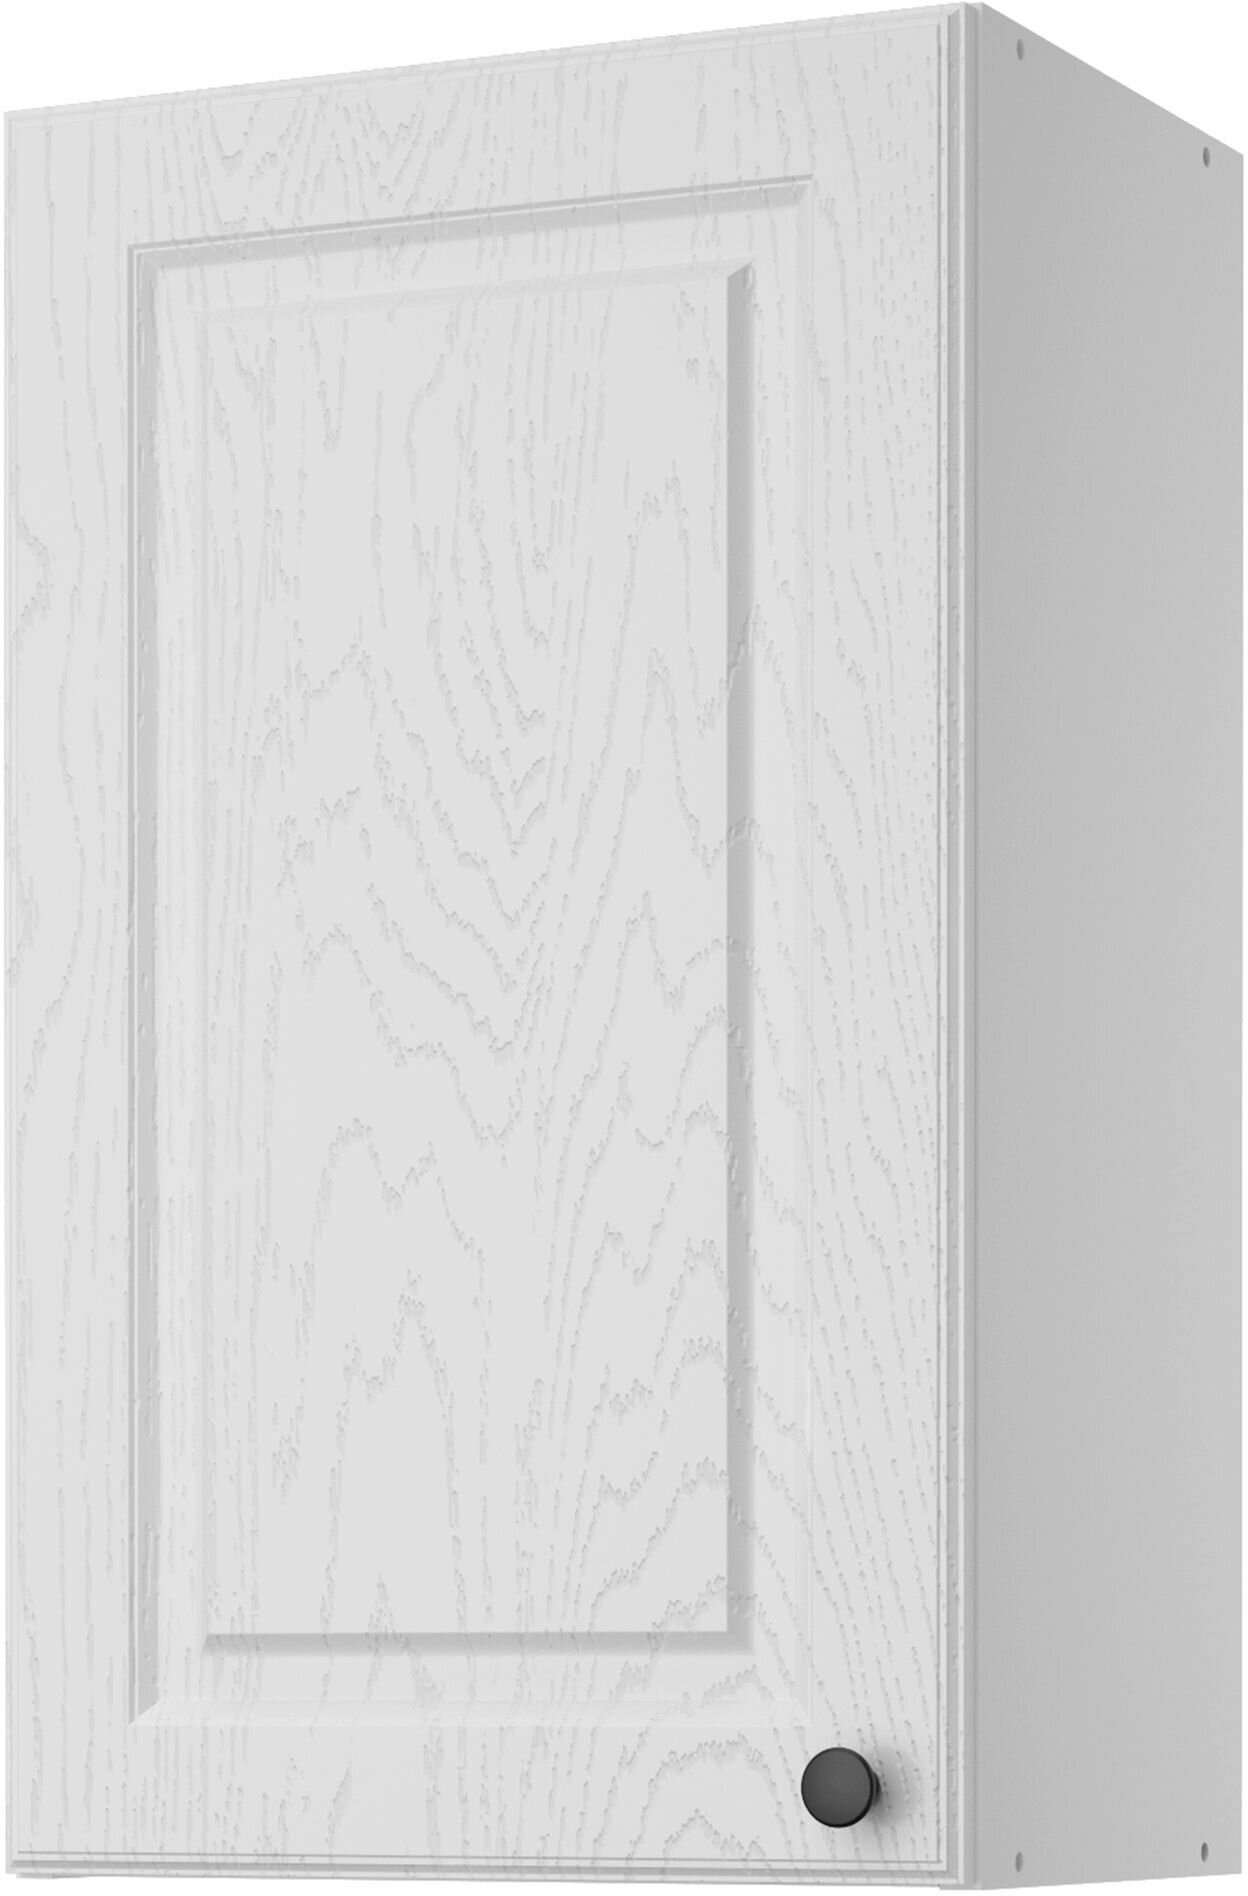 Кухонный модуль навесной шкаф Beneli гатьен, Белый, 40х28,9х67,6см, 1шт.